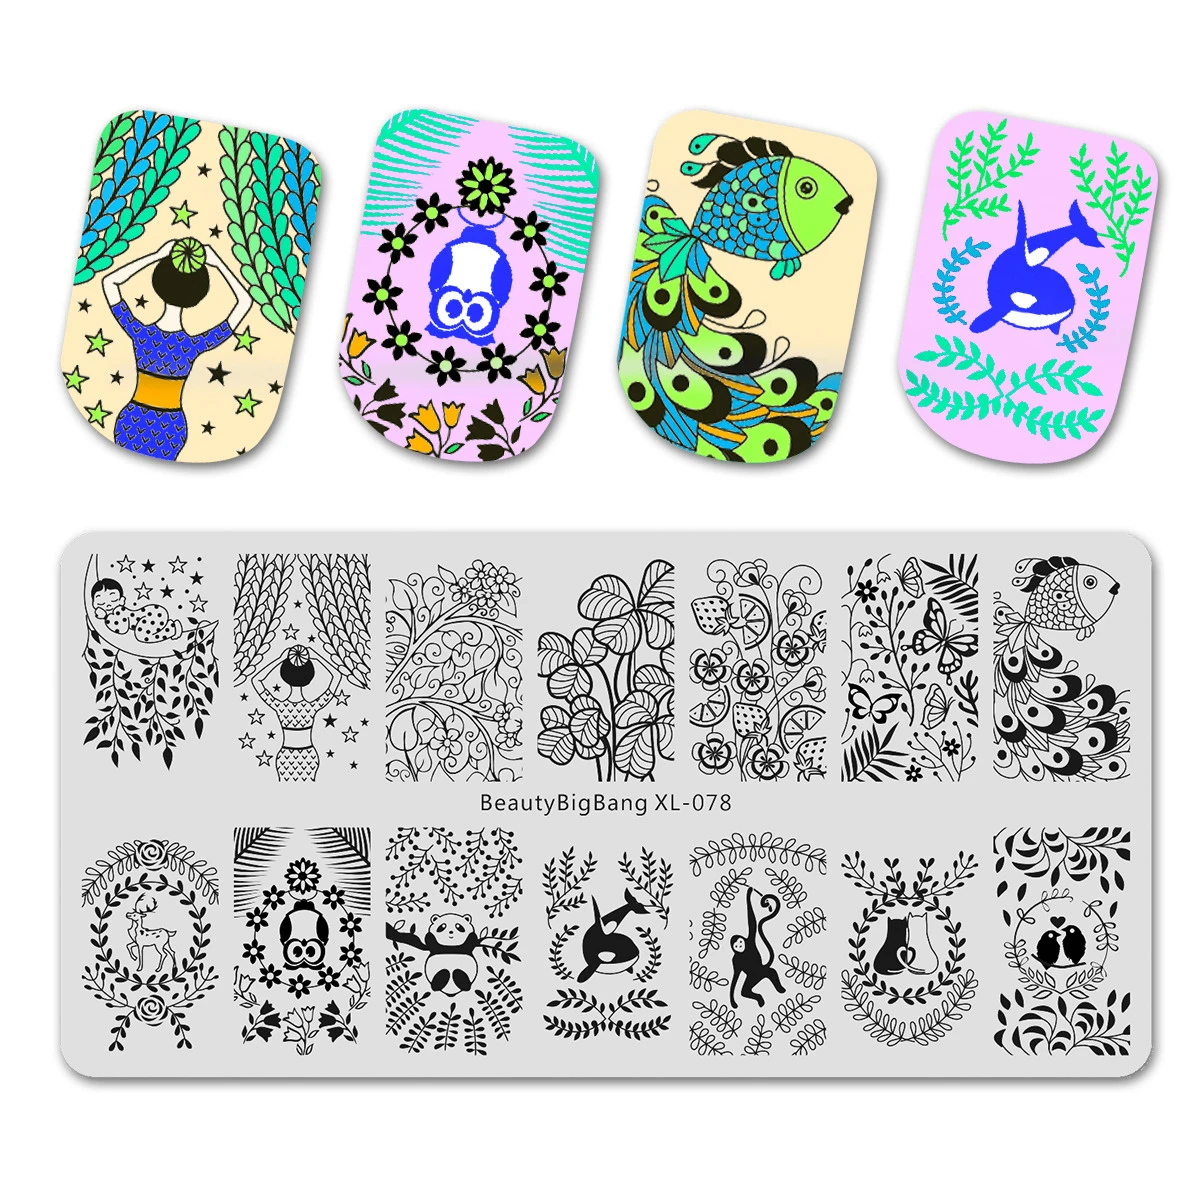 Beautybigbang пластины для штамповки ногтей листья рамка Акула Бабочка Олень Единорог Изображение Шаблон для стемпинга для нейл-арта плесень XL-084 - Цвет: 78